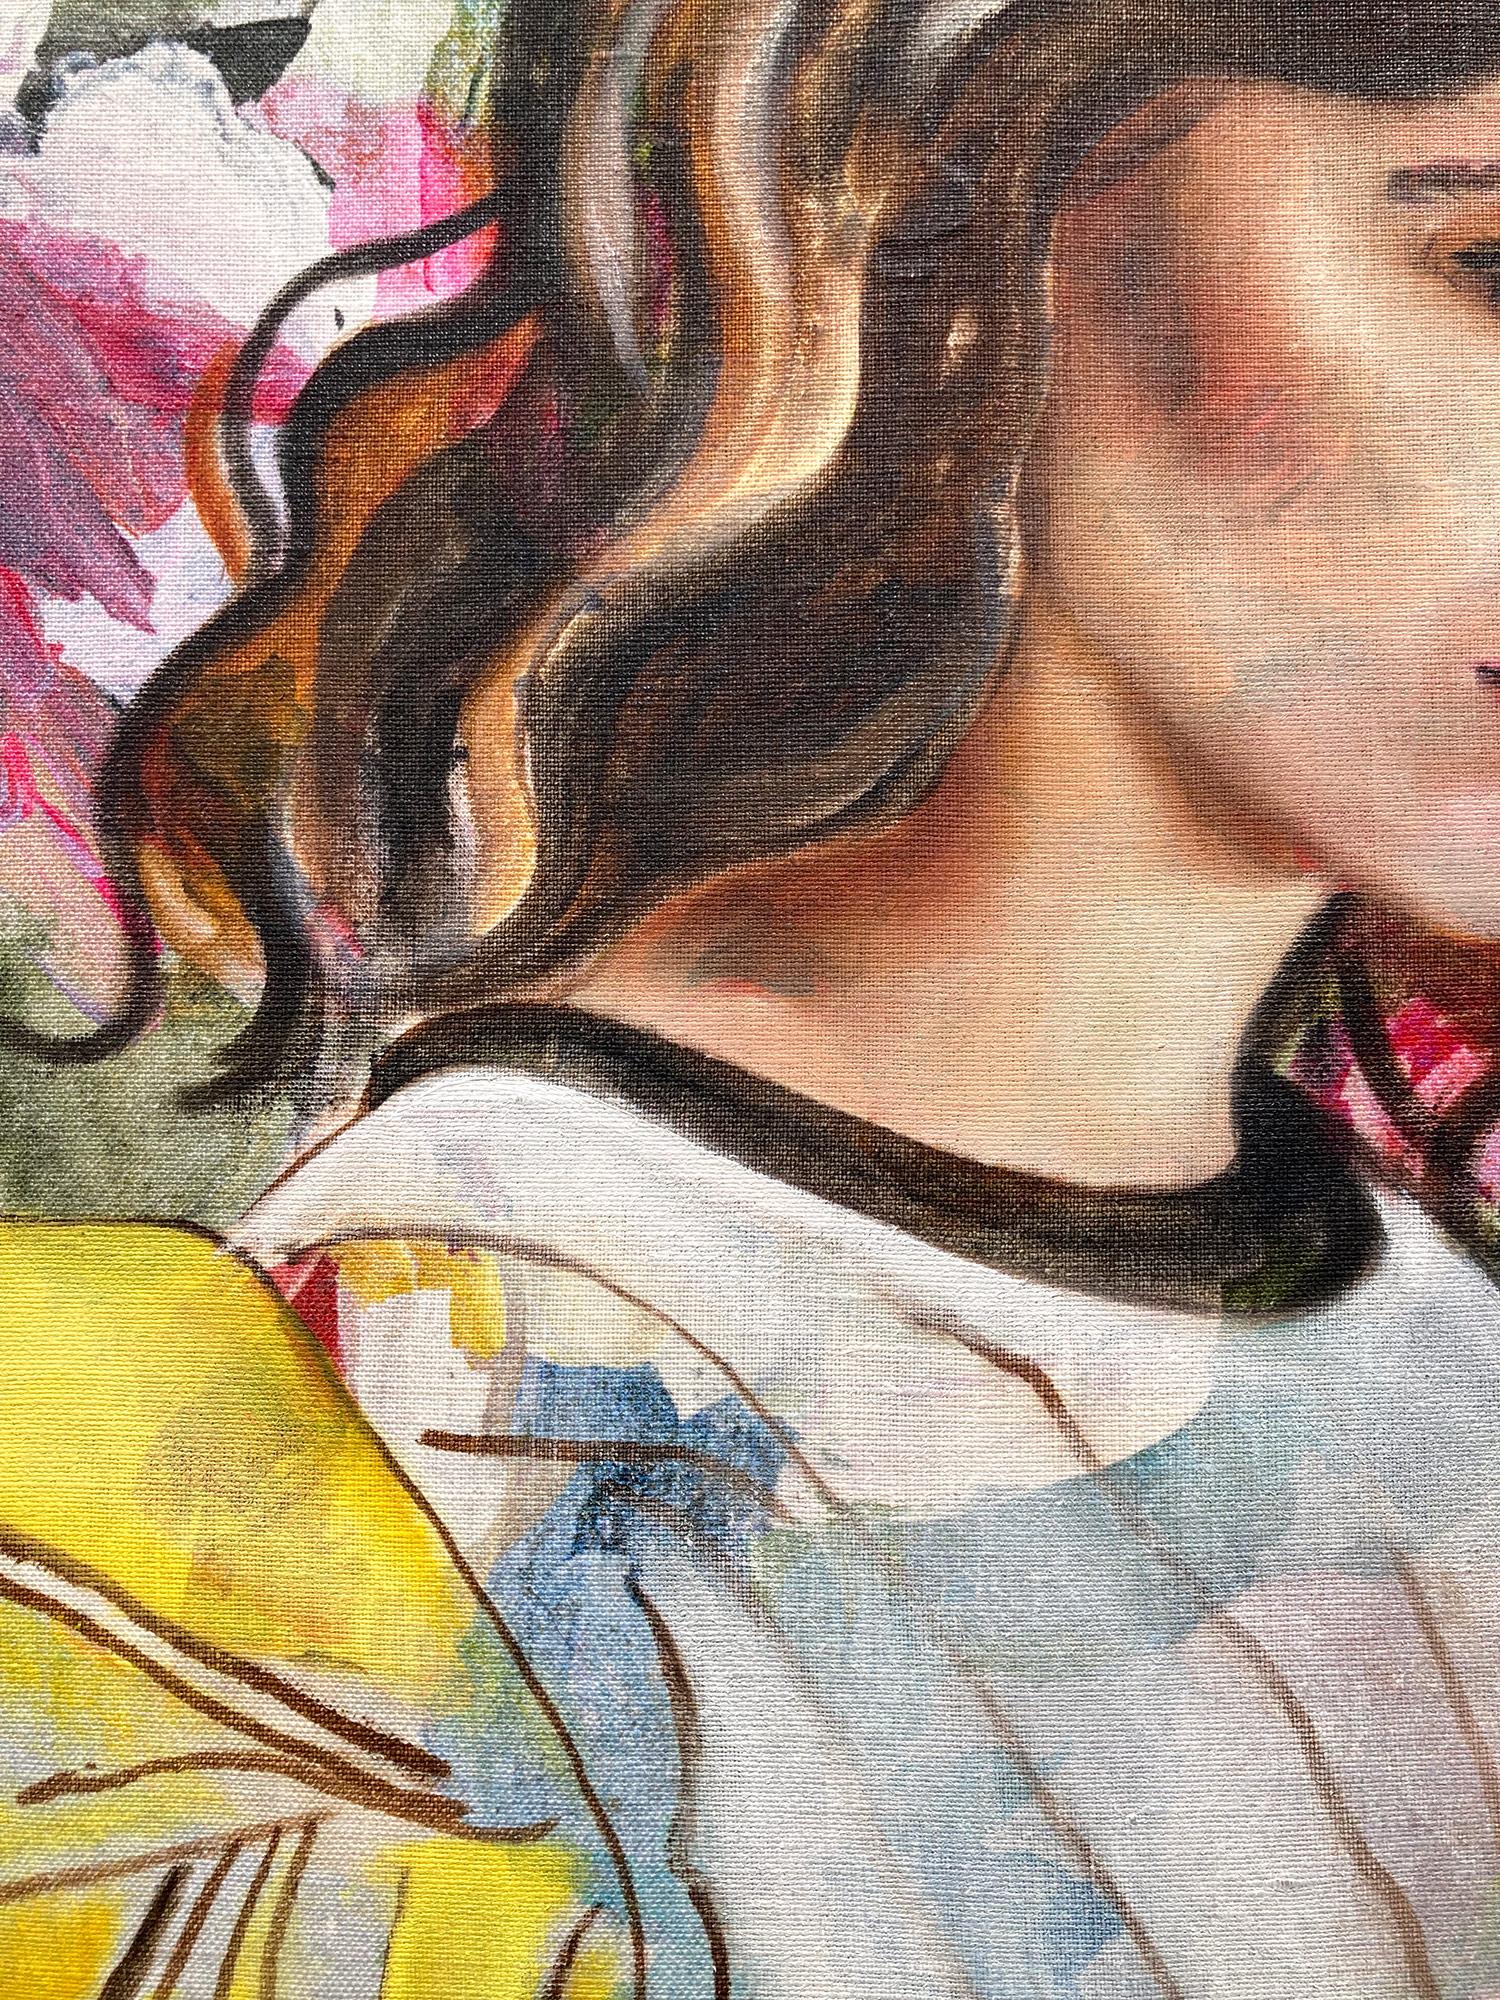 Zeitgenössisches Ölgemälde „Maria“ auf Stoff eines Mädchens in Haute Couture-Mode (Braun), Abstract Painting, von Eva O’Donovan 